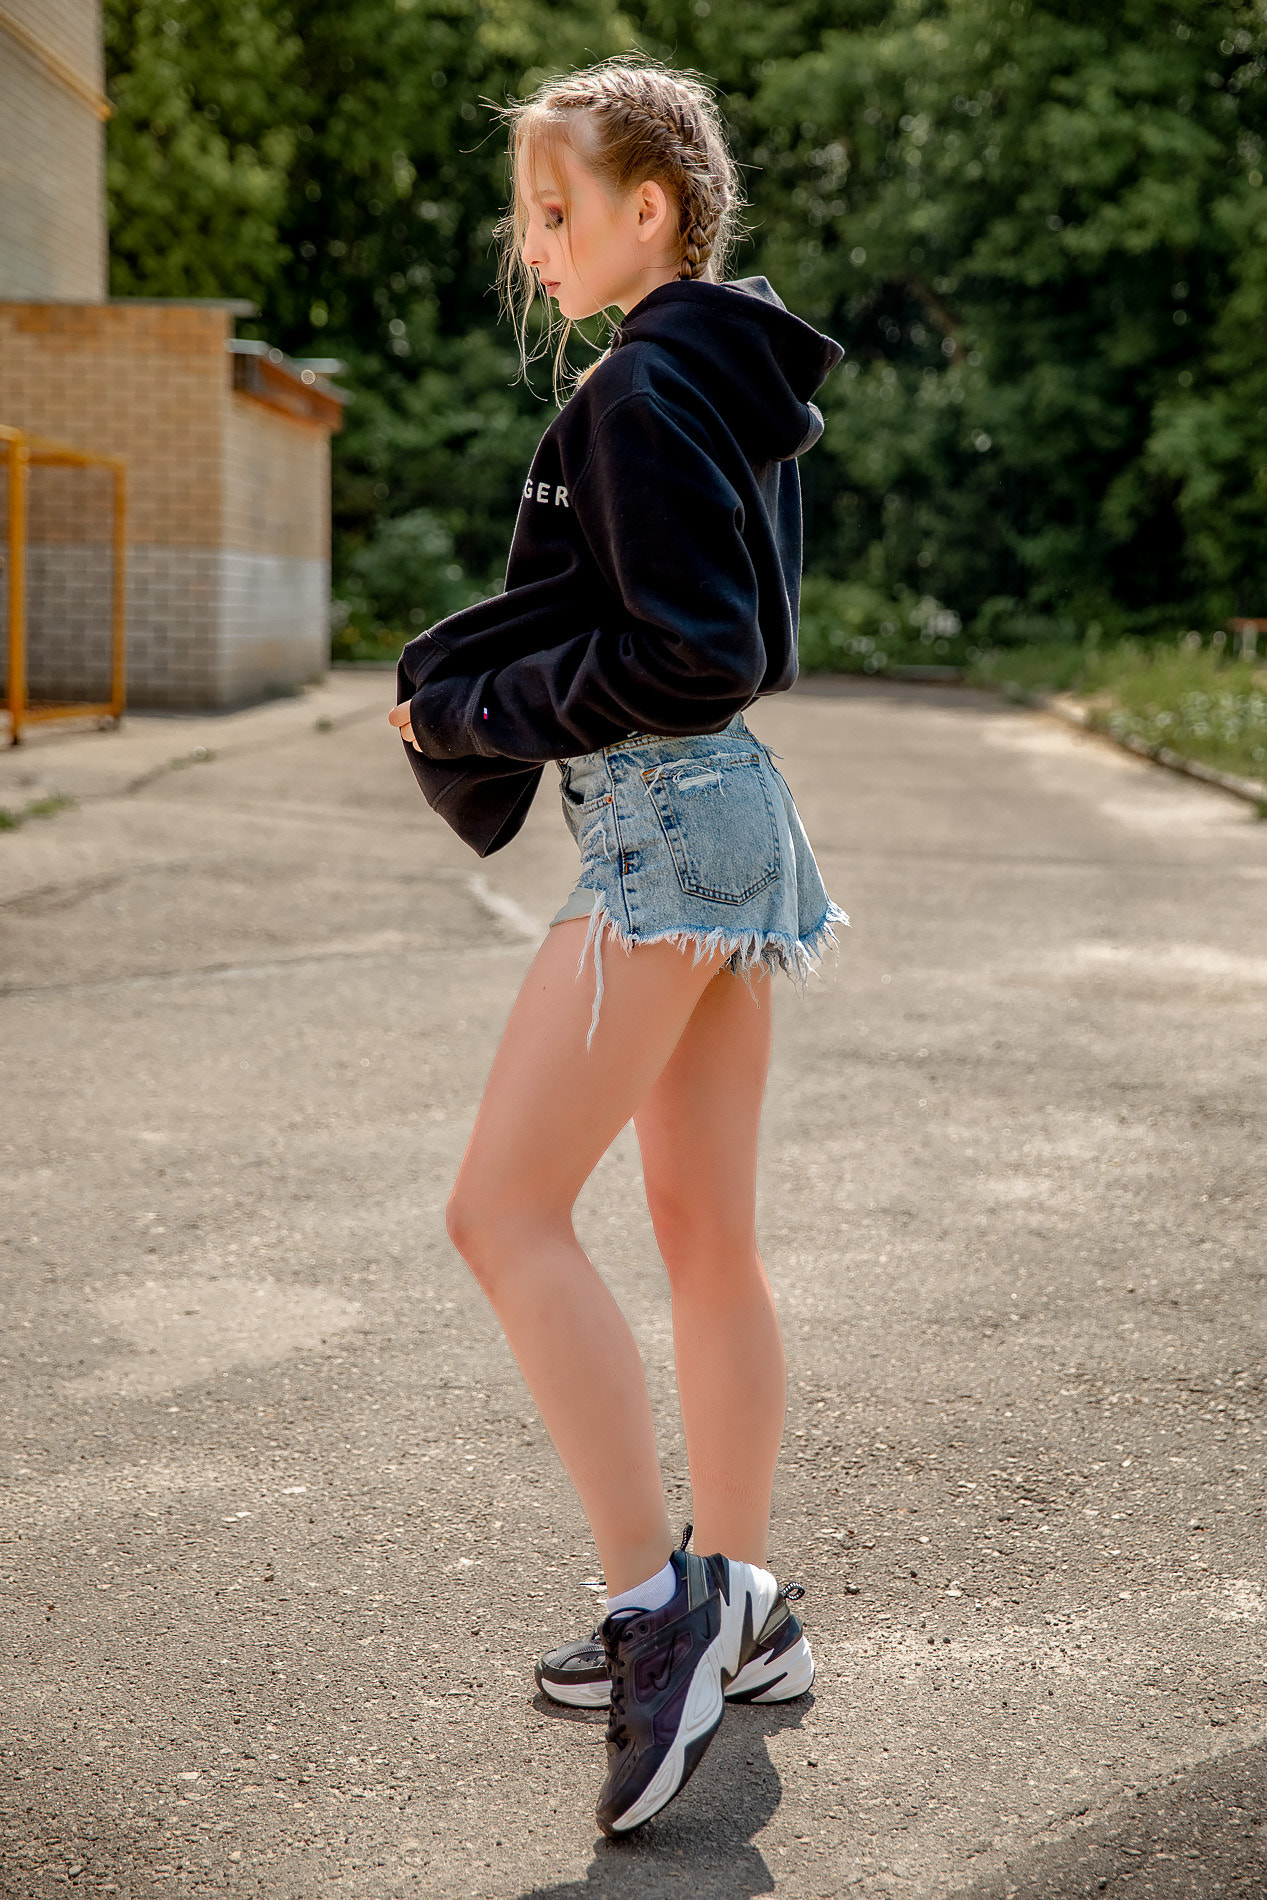 People 1267x1900 Dmitry Korneev women blonde braids hoods shorts jeans denim sneakers outdoors sportswear sweatshirts